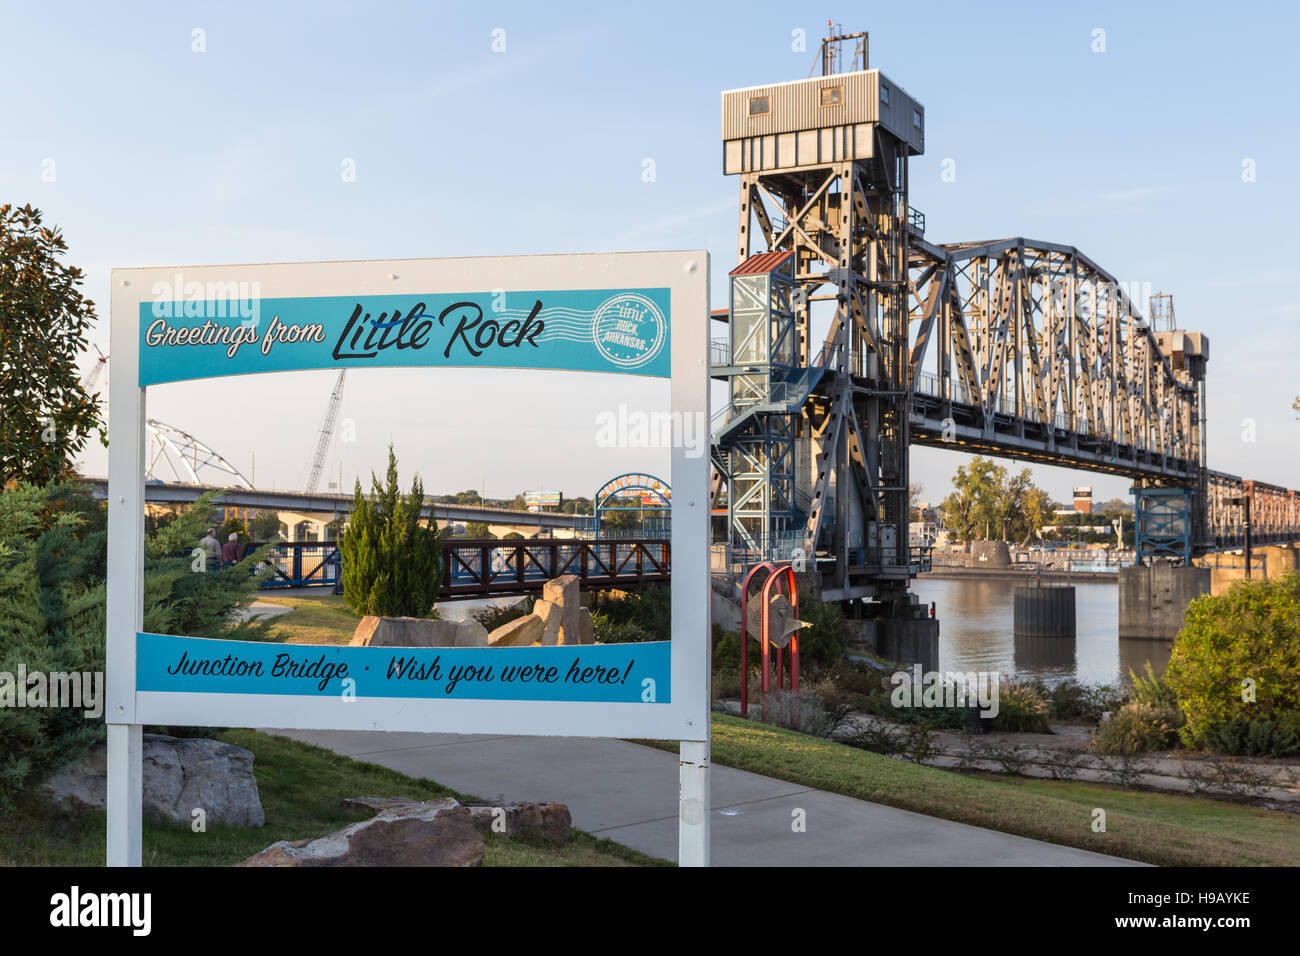 Un signe avec 'Greetings from Little Rock' sur le chemin du pont de jonction à Little Rock, Arkansas. Banque D'Images